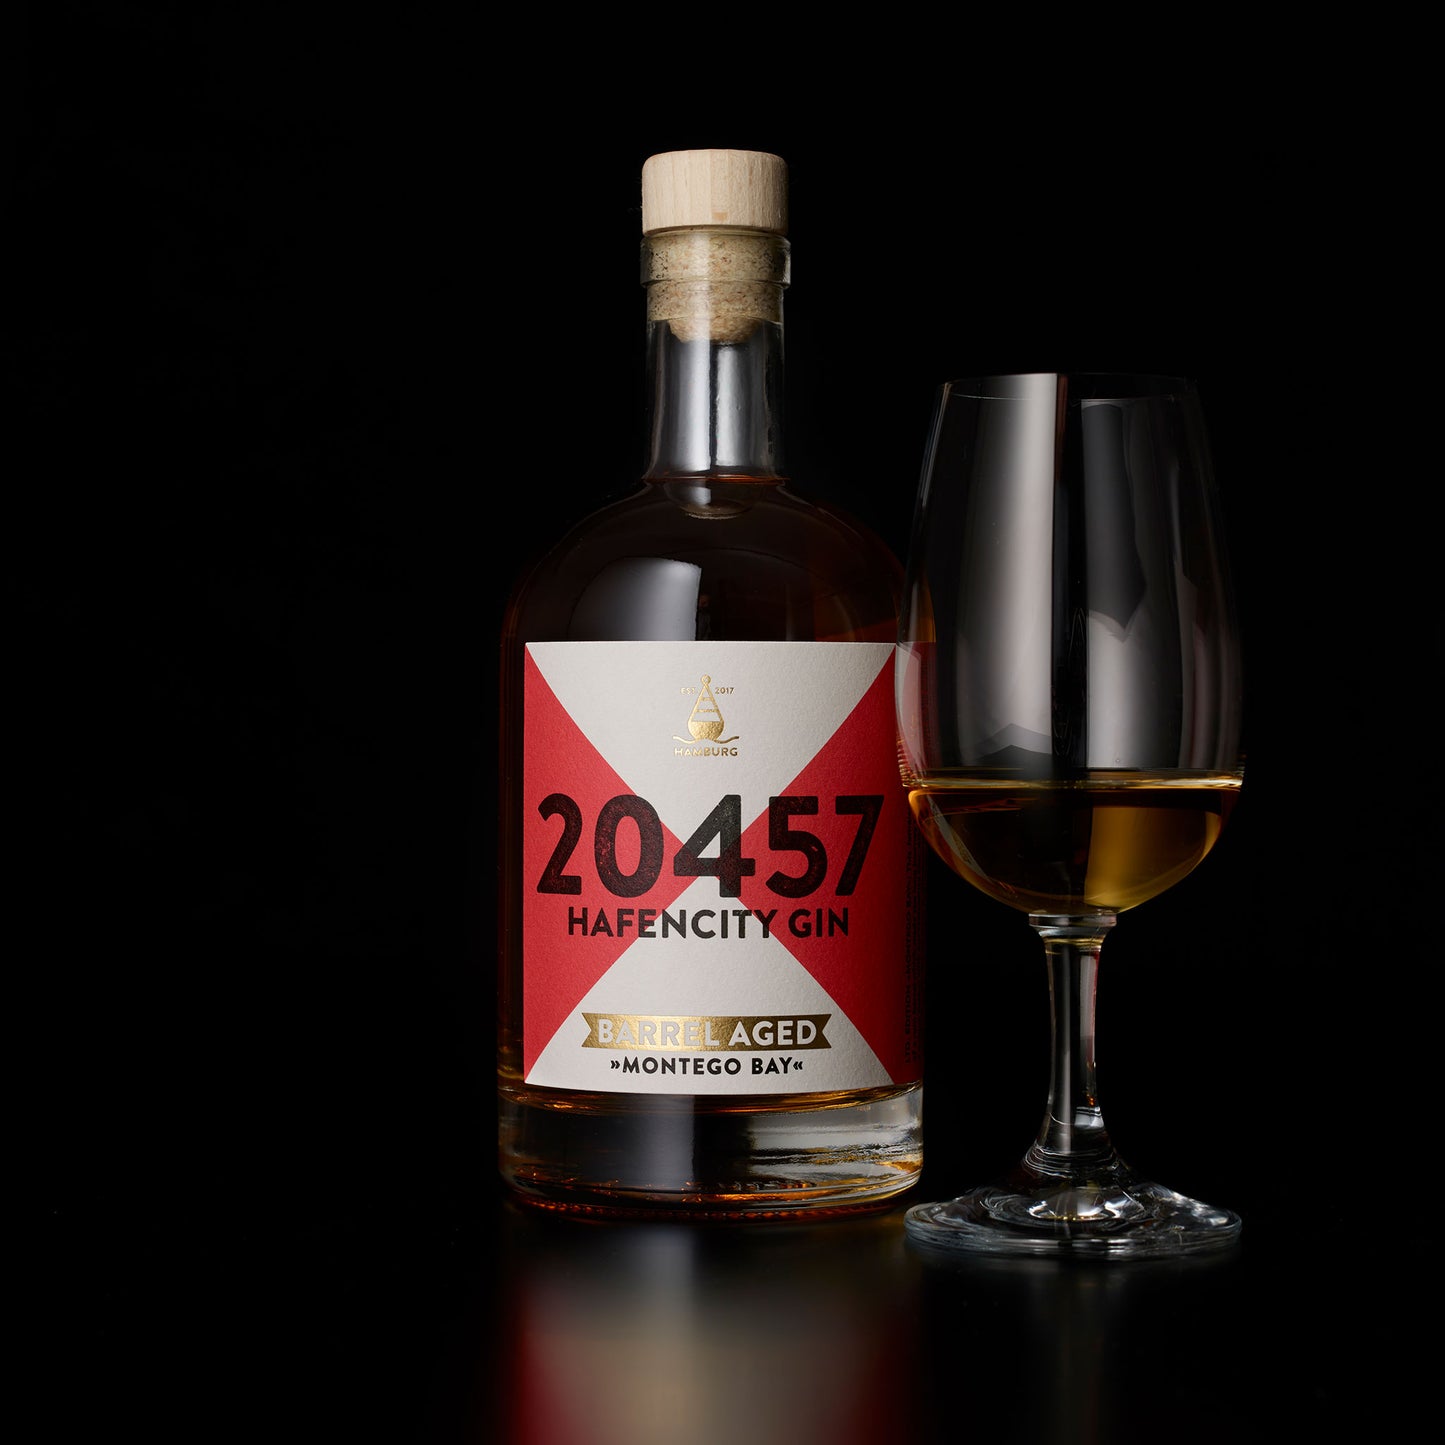 
                  
                    20457 Hafencity Gin Barrel Aged Montego Bay. Gereift in einem Jamaika Rum Fass. Limited Edition 0,5L Flasche
                  
                